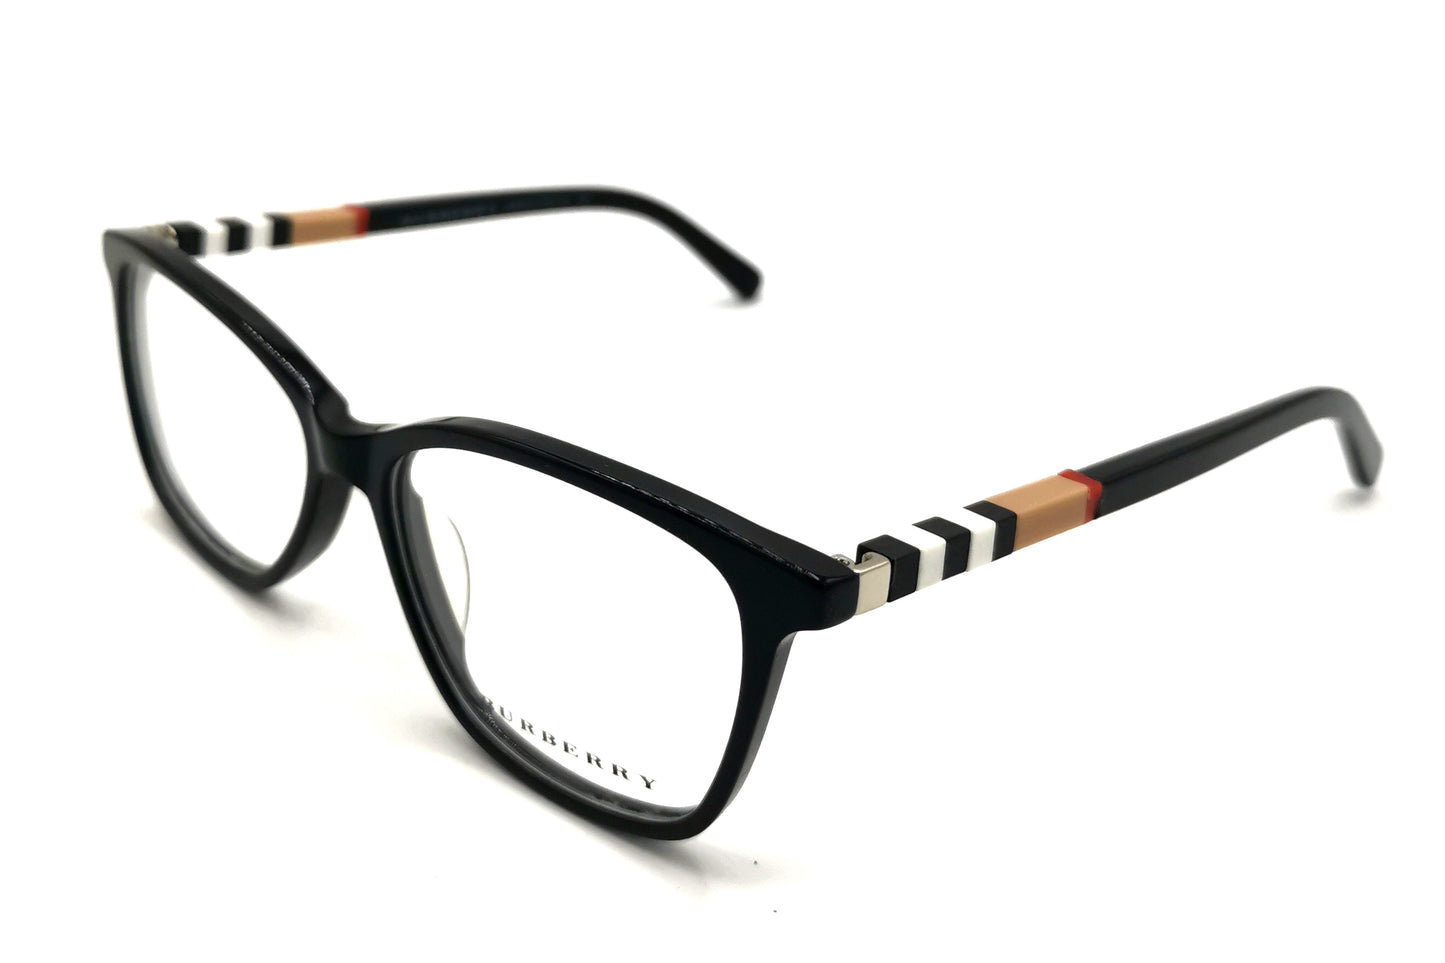 NS Luxury - 2279 - Black - Eyeglasses